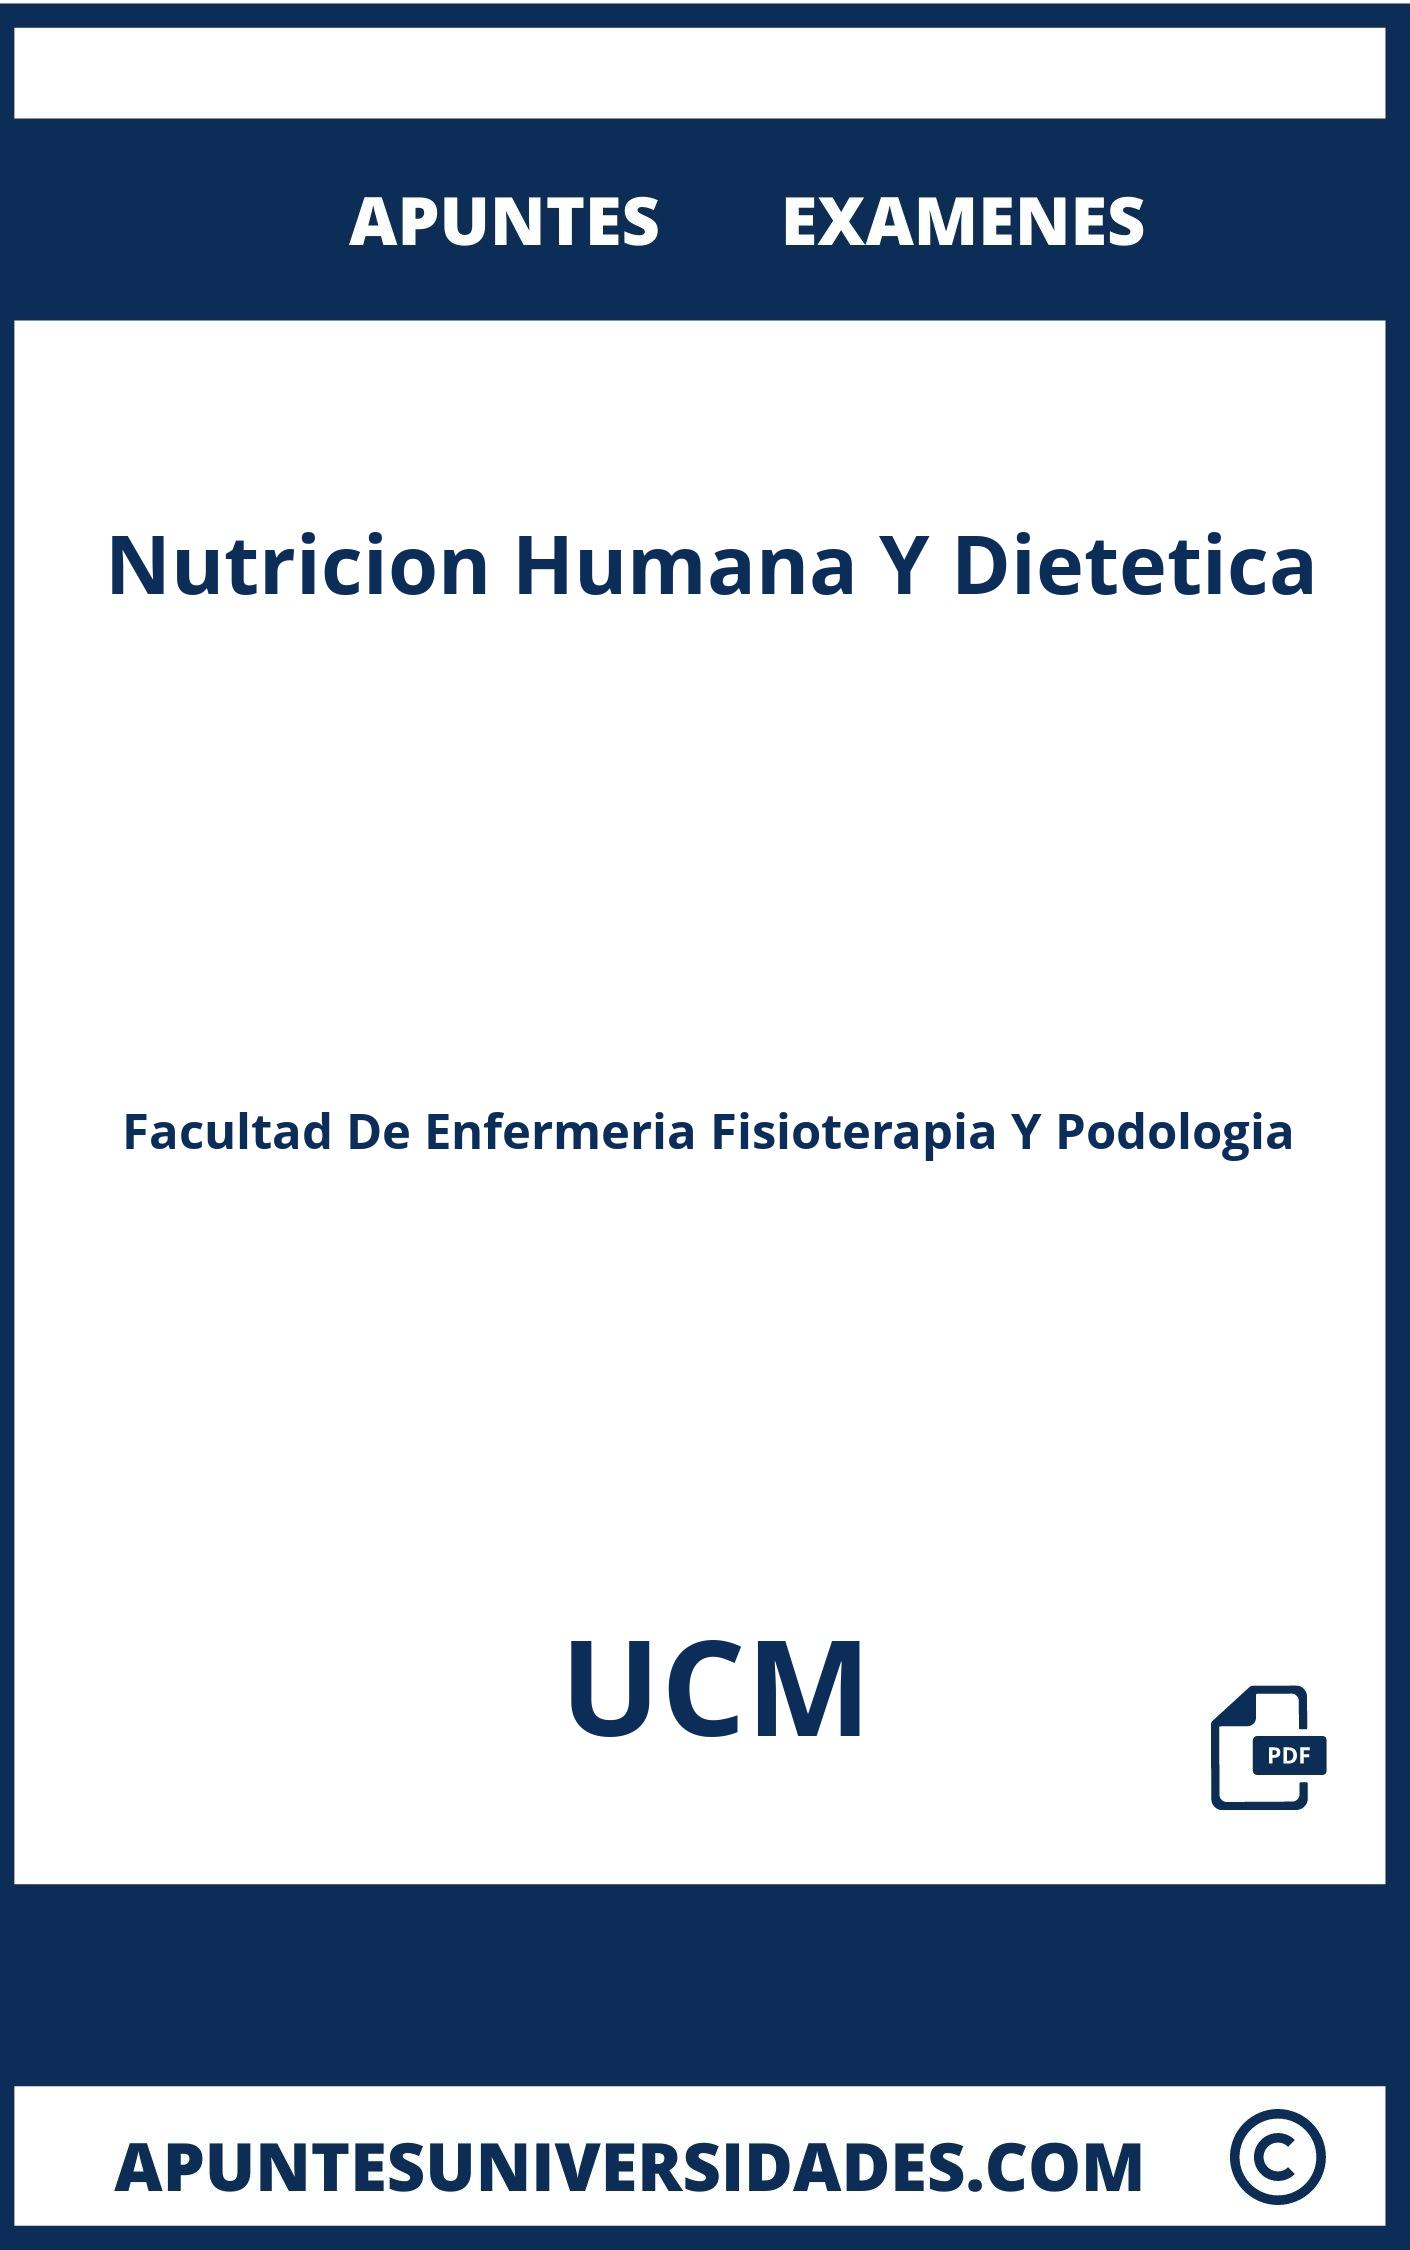 Nutricion Humana Y Dietetica UCM Examenes Apuntes